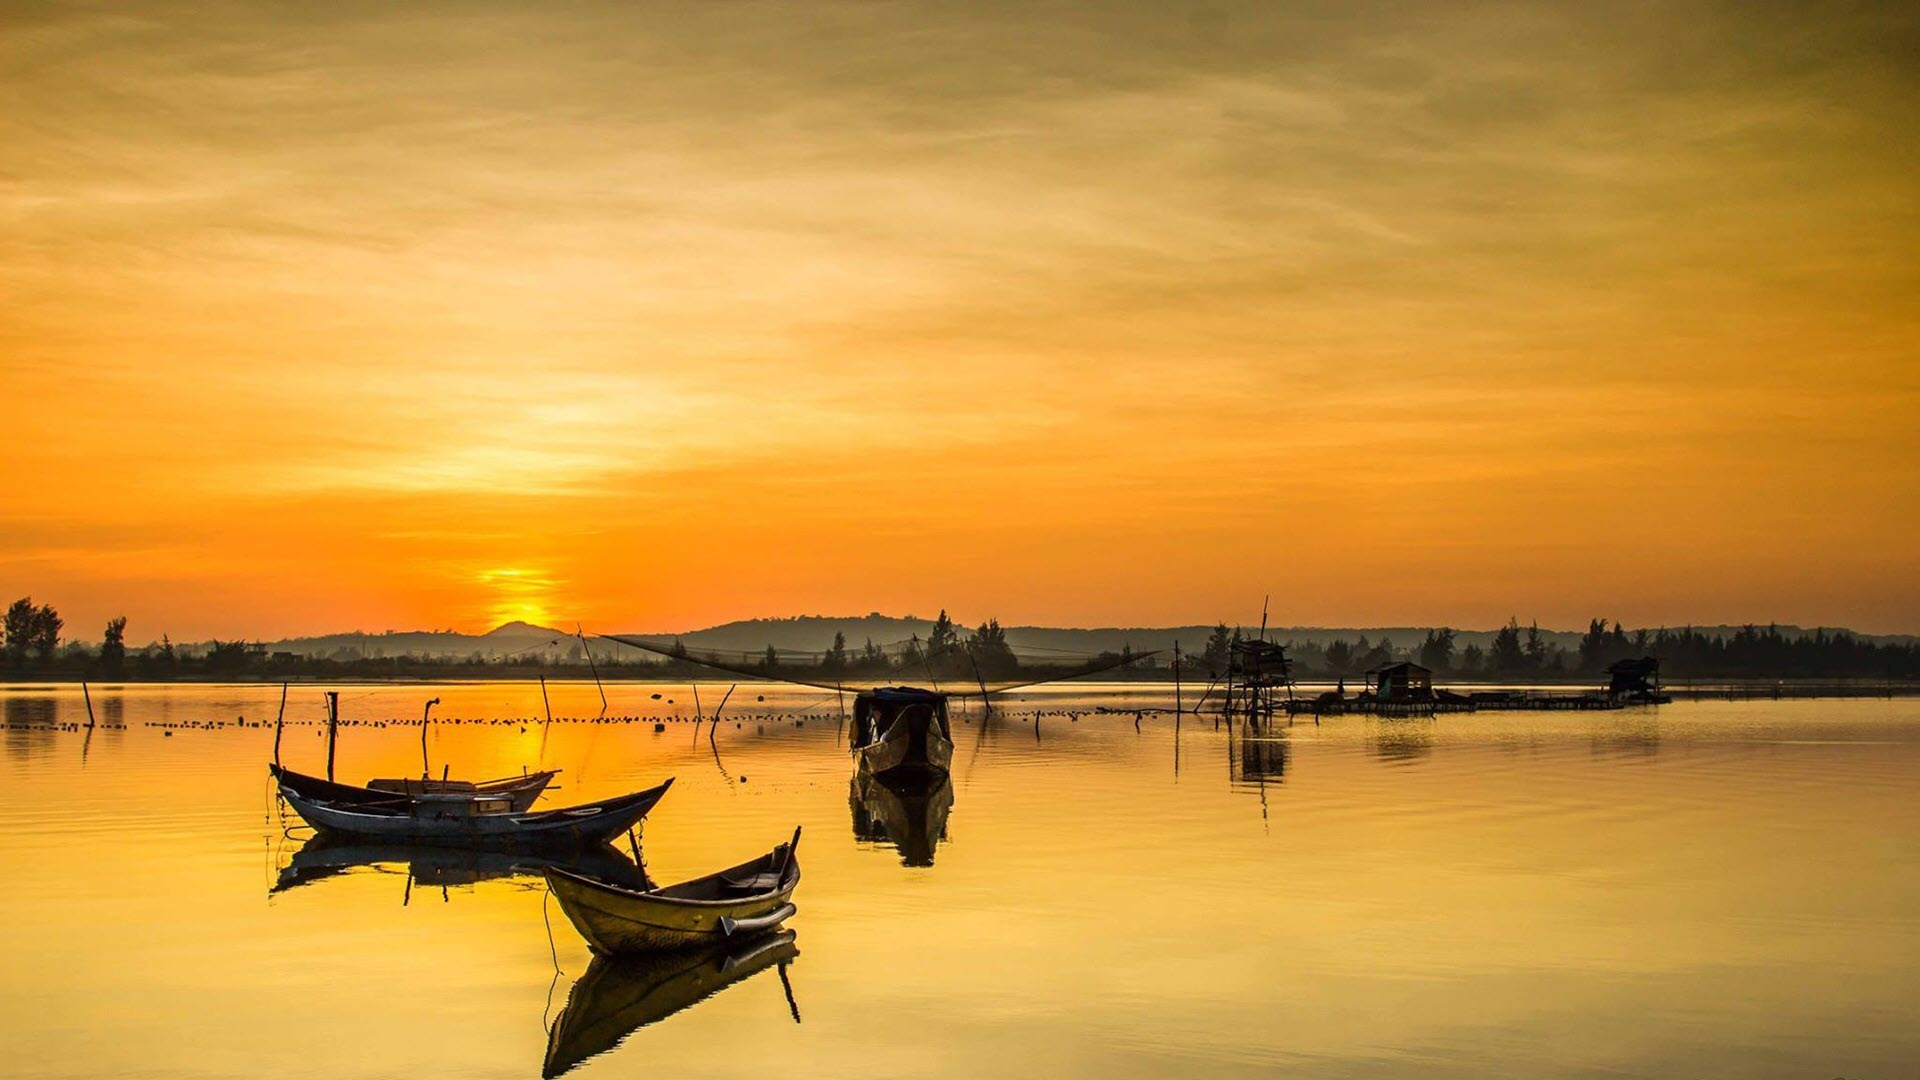 Tổng hợp 100 ảnh nền quê hương Việt Nam đẹp lộng lẫy